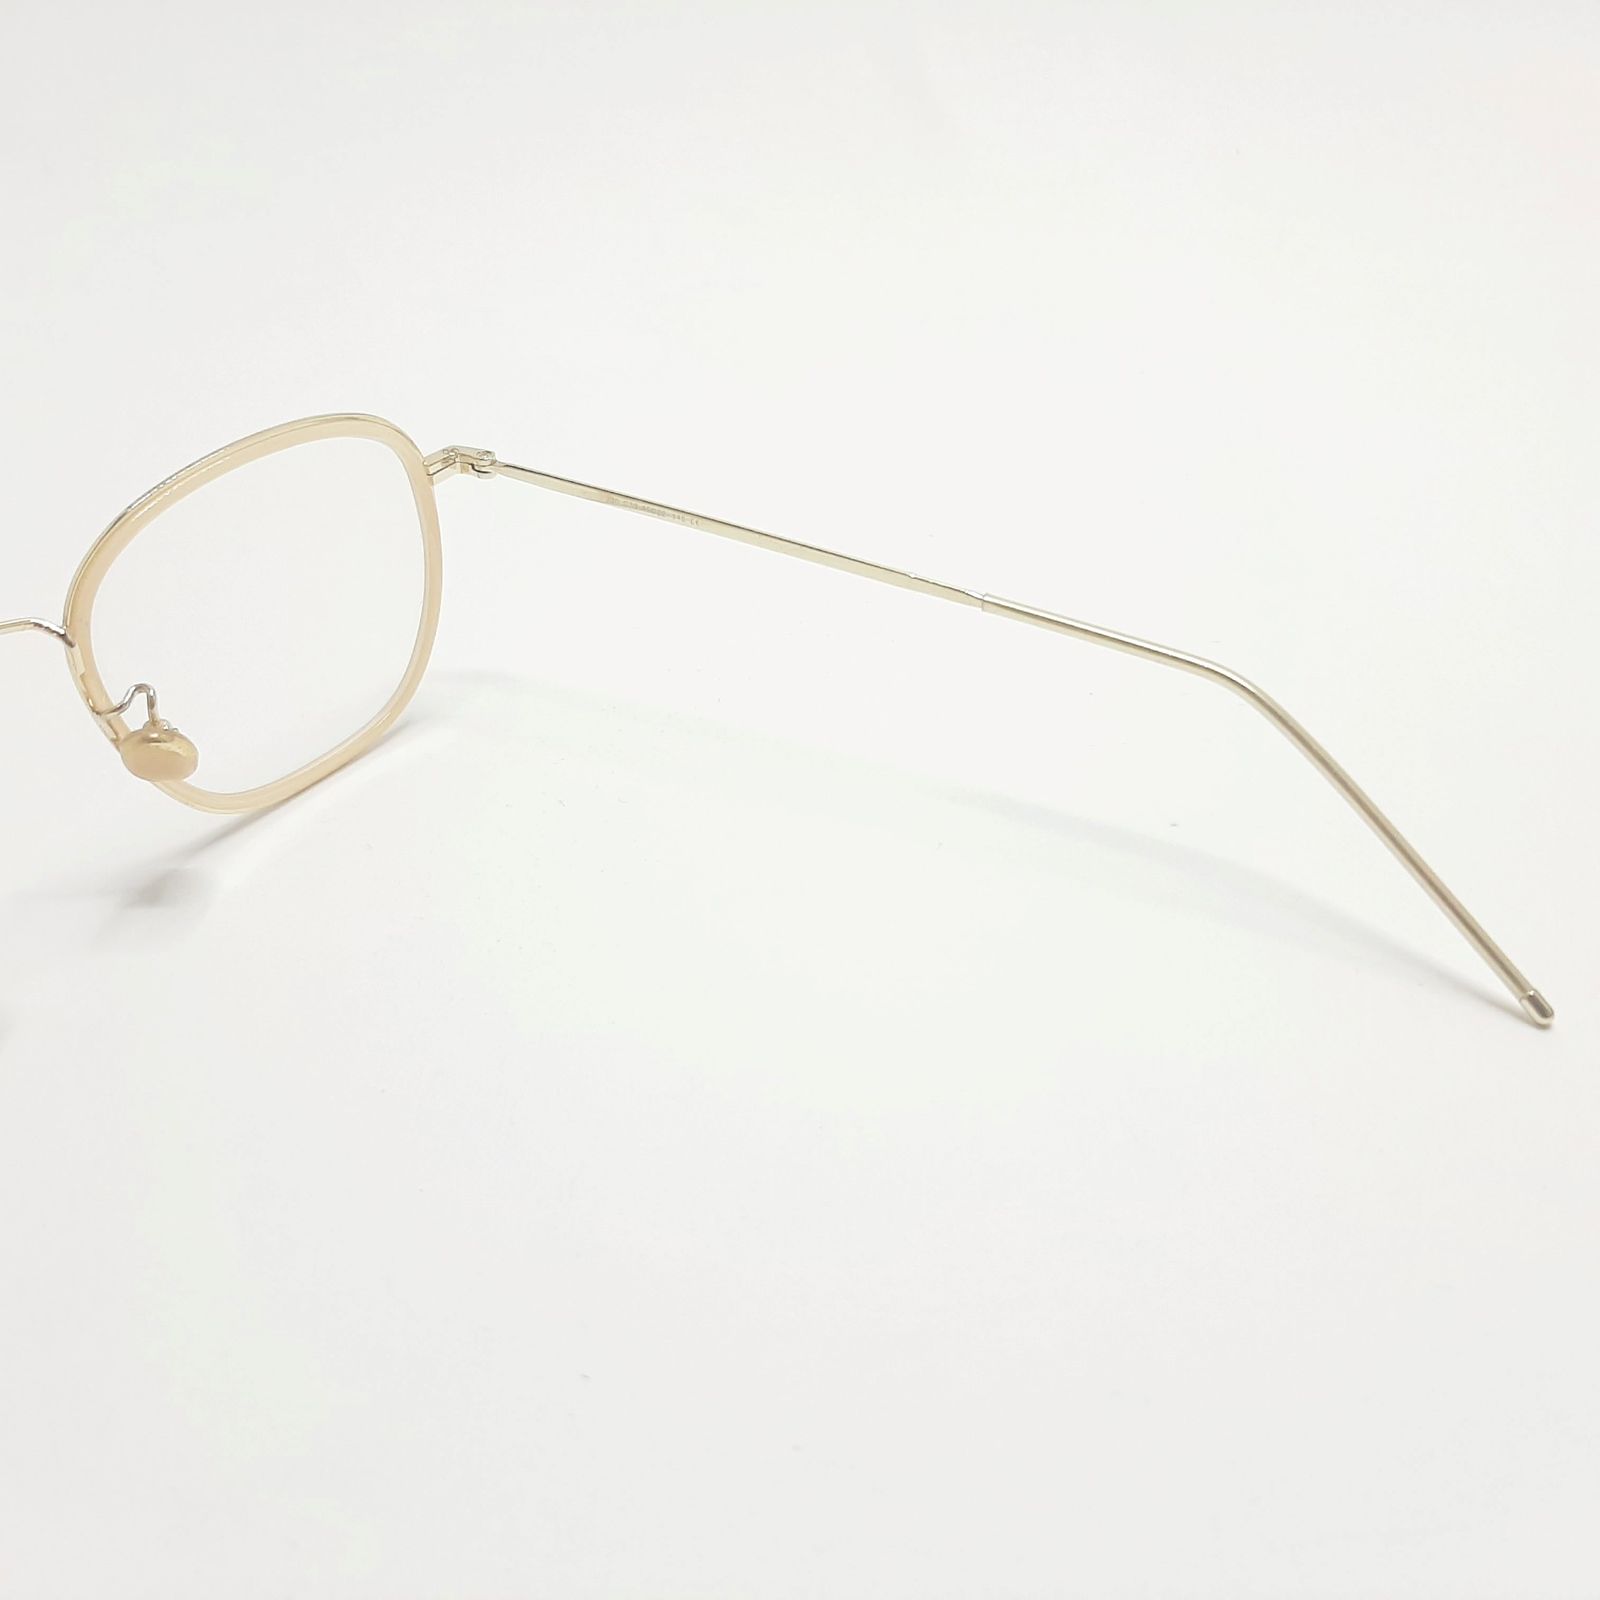 فریم عینک طبی پاواروتی مدل P230c39 -  - 6